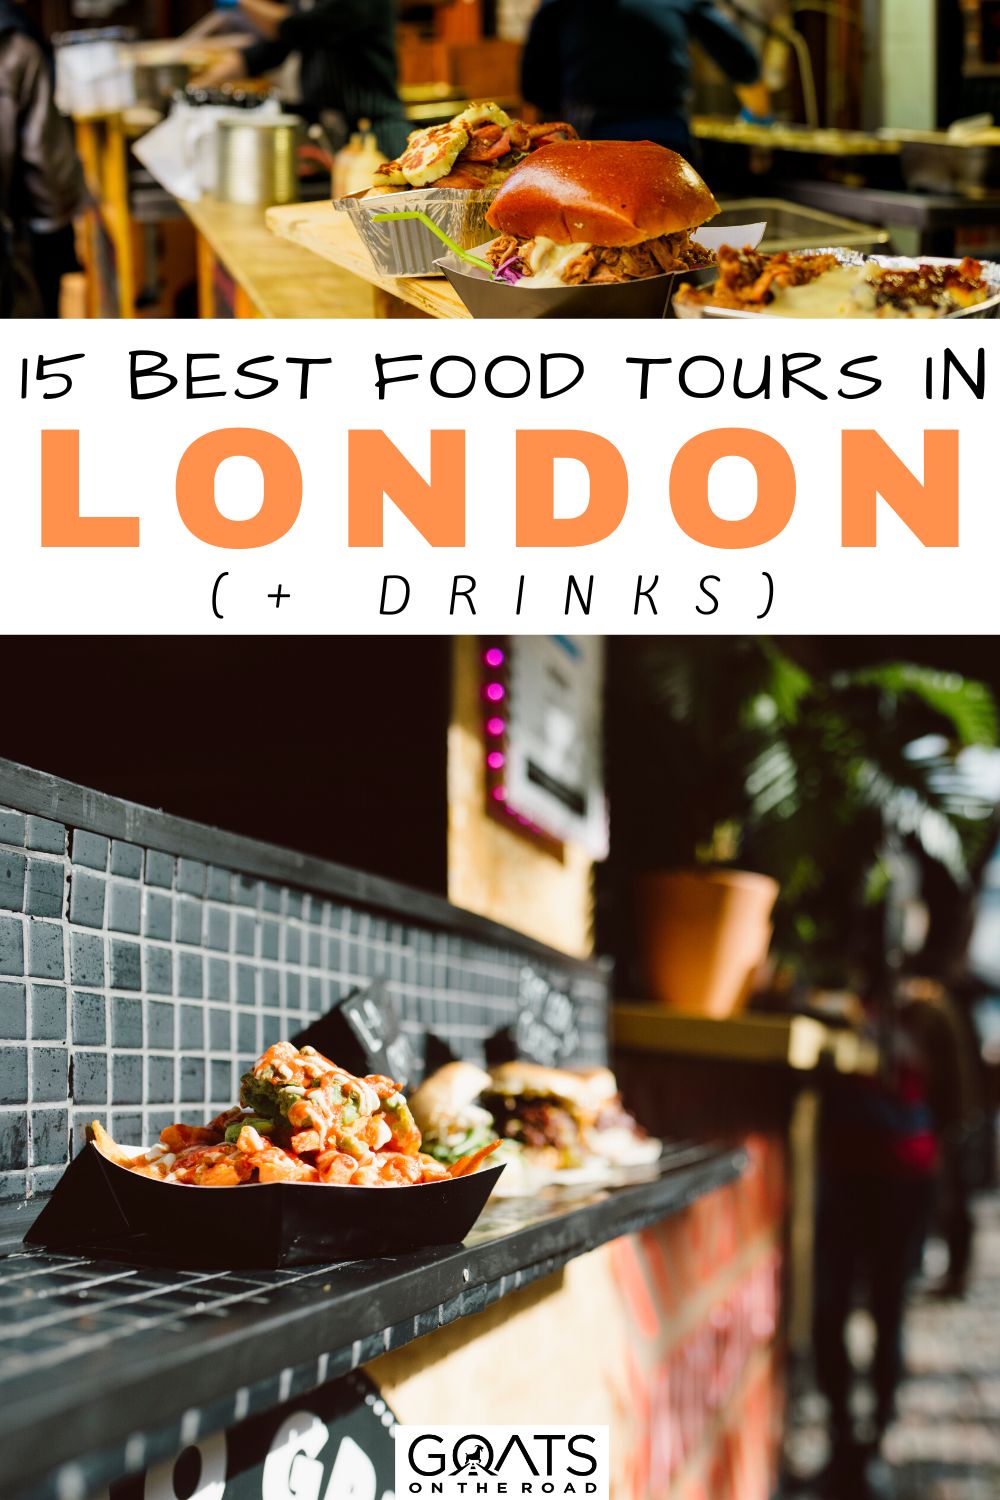 “15 Best Food Tours in London (+ Drinks)